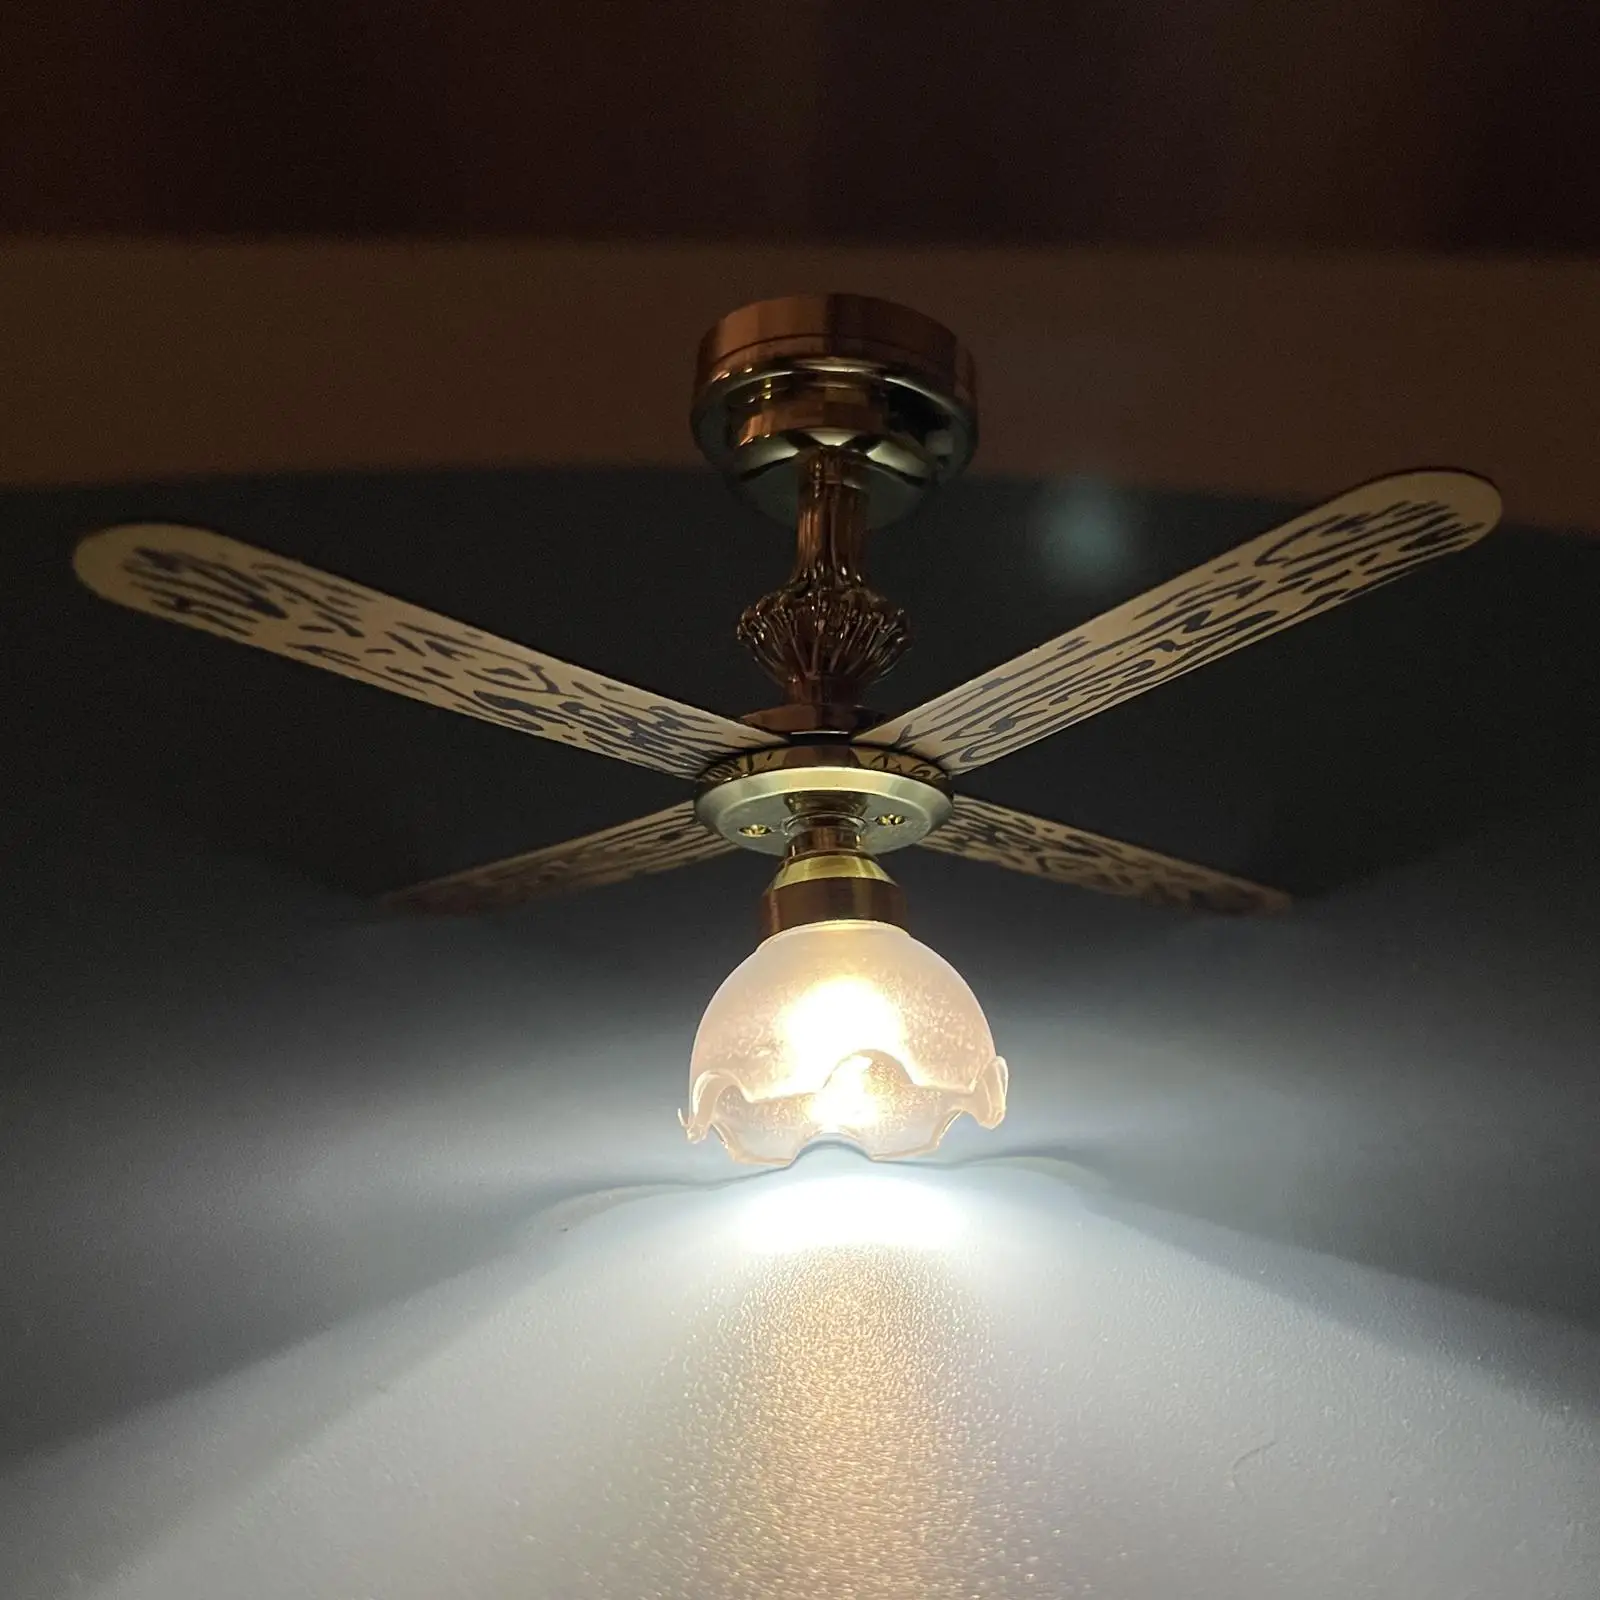 1/12  Dollhouse Ceiling Lamp Battery Powered Fan Light Lighting LED